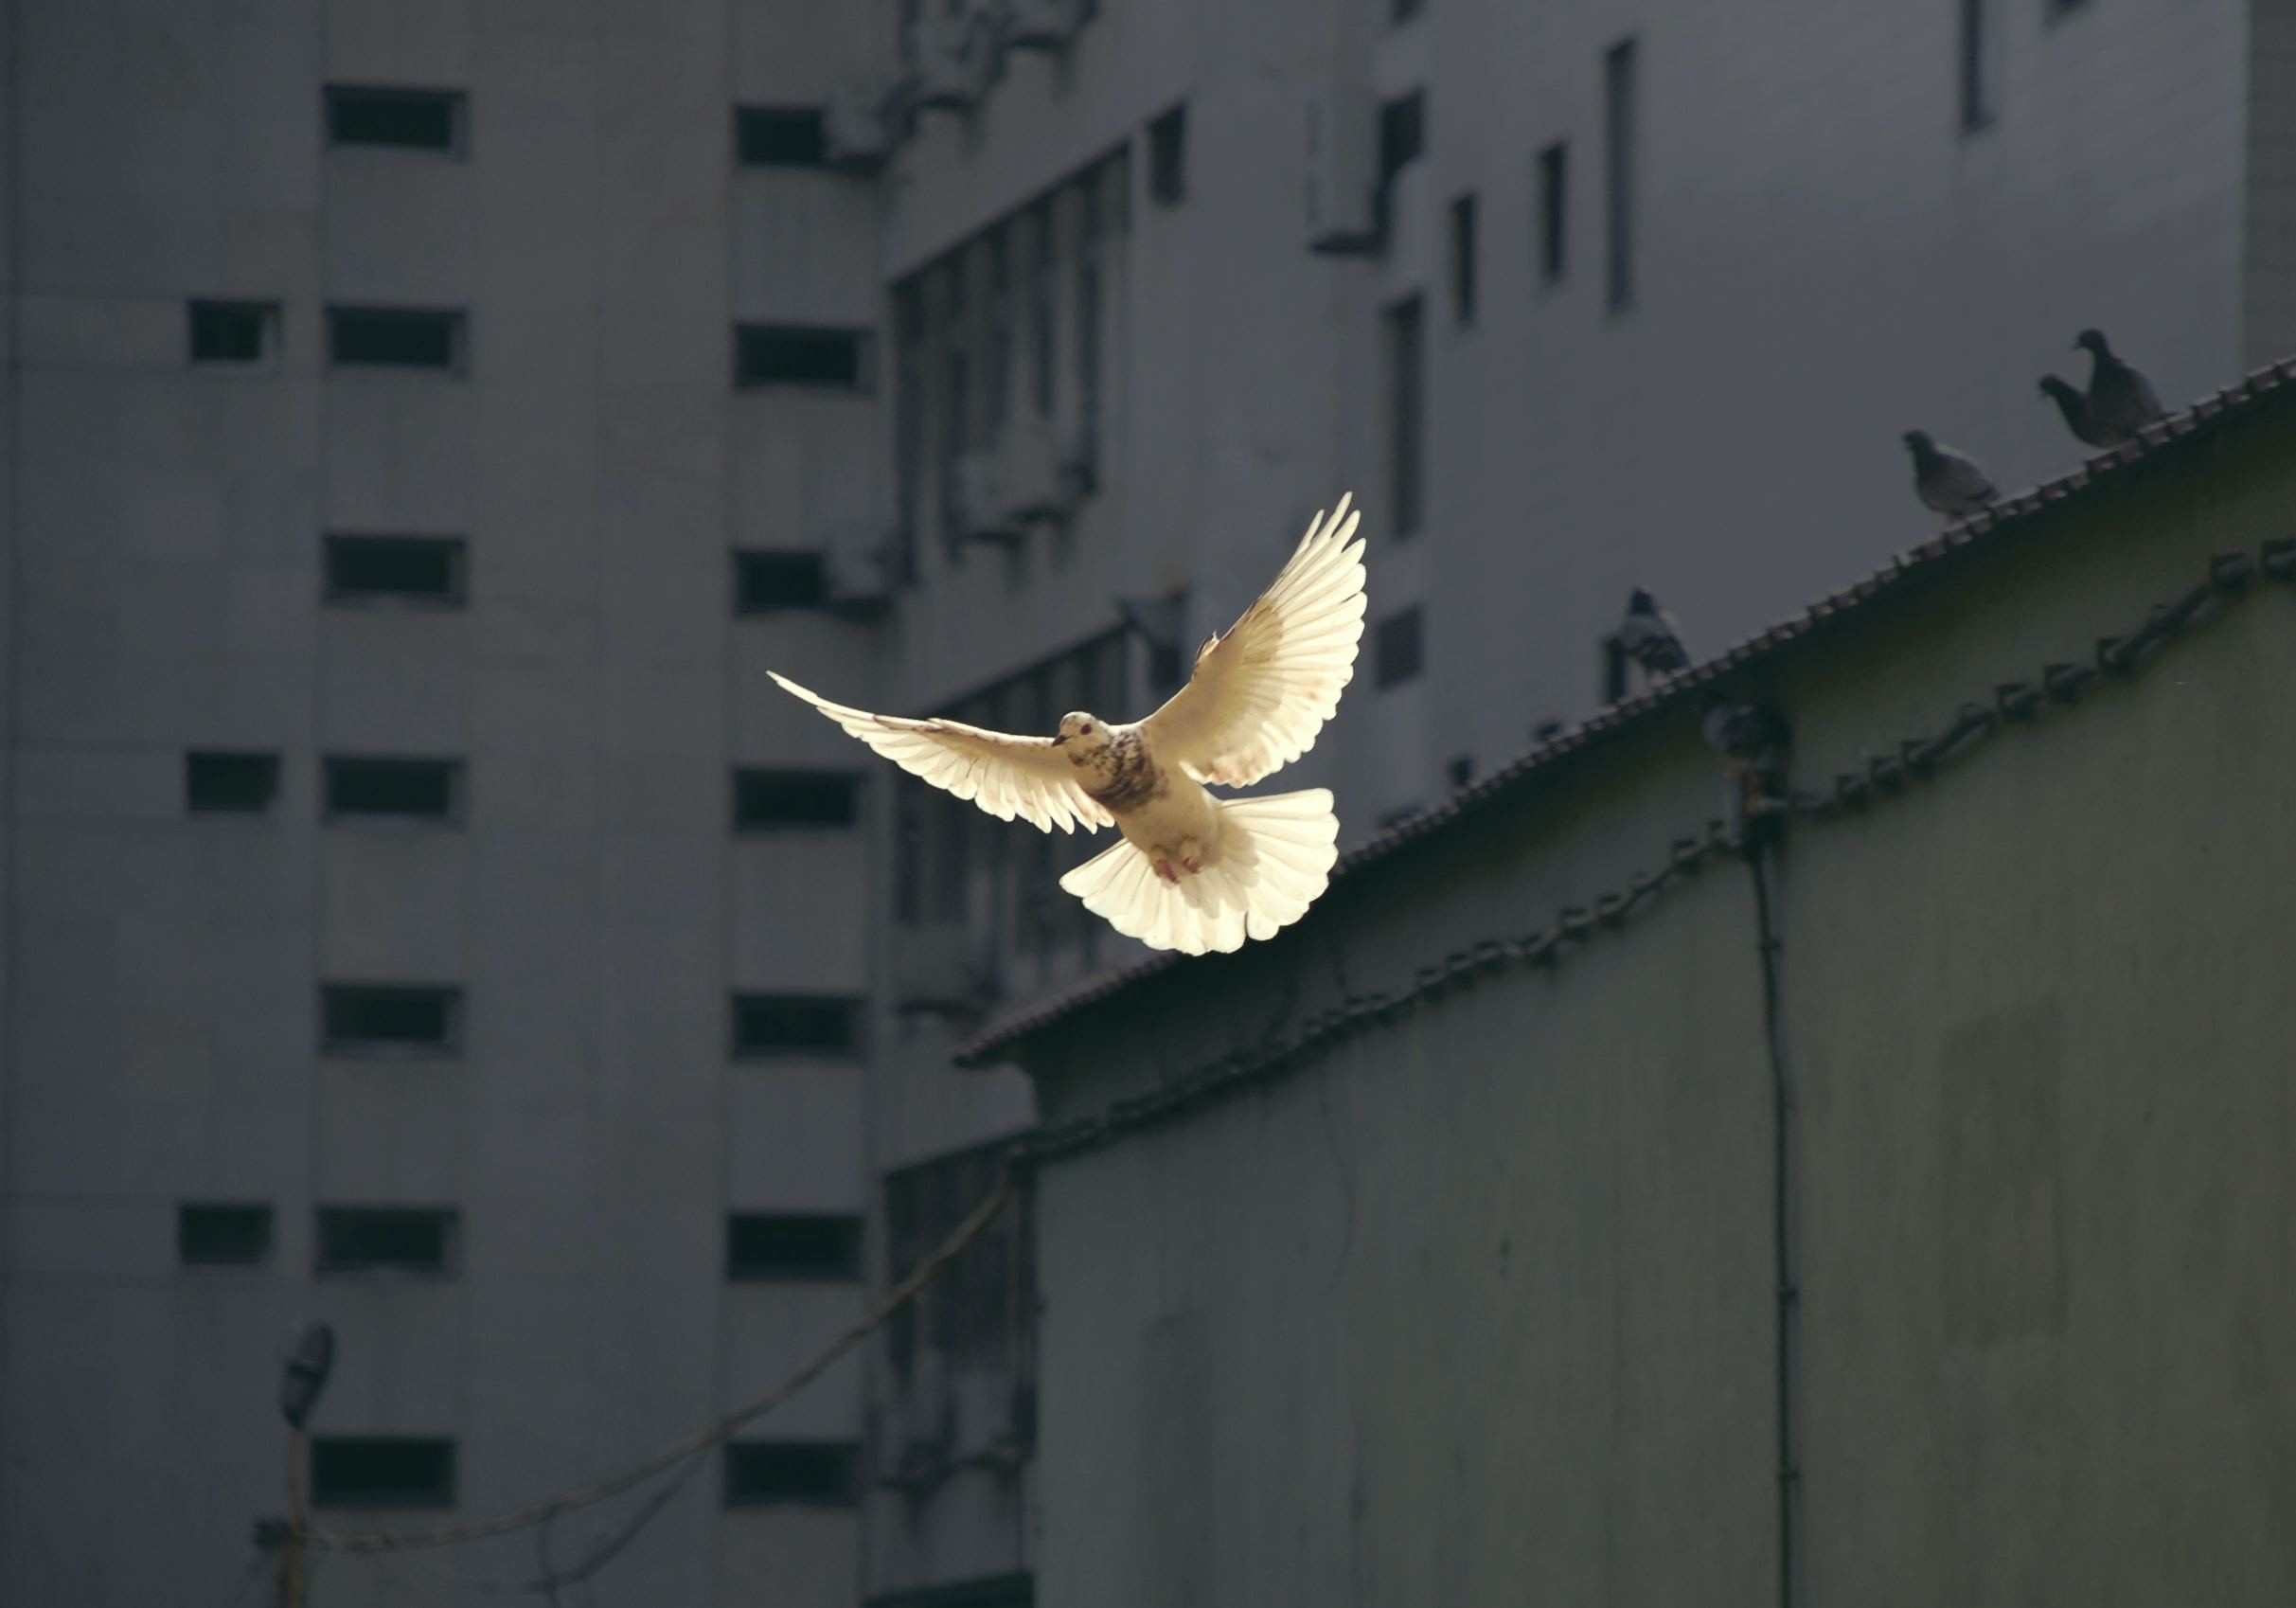 空中白鸽:包容性建设和平战略优先考虑地方行动者和社区观点。